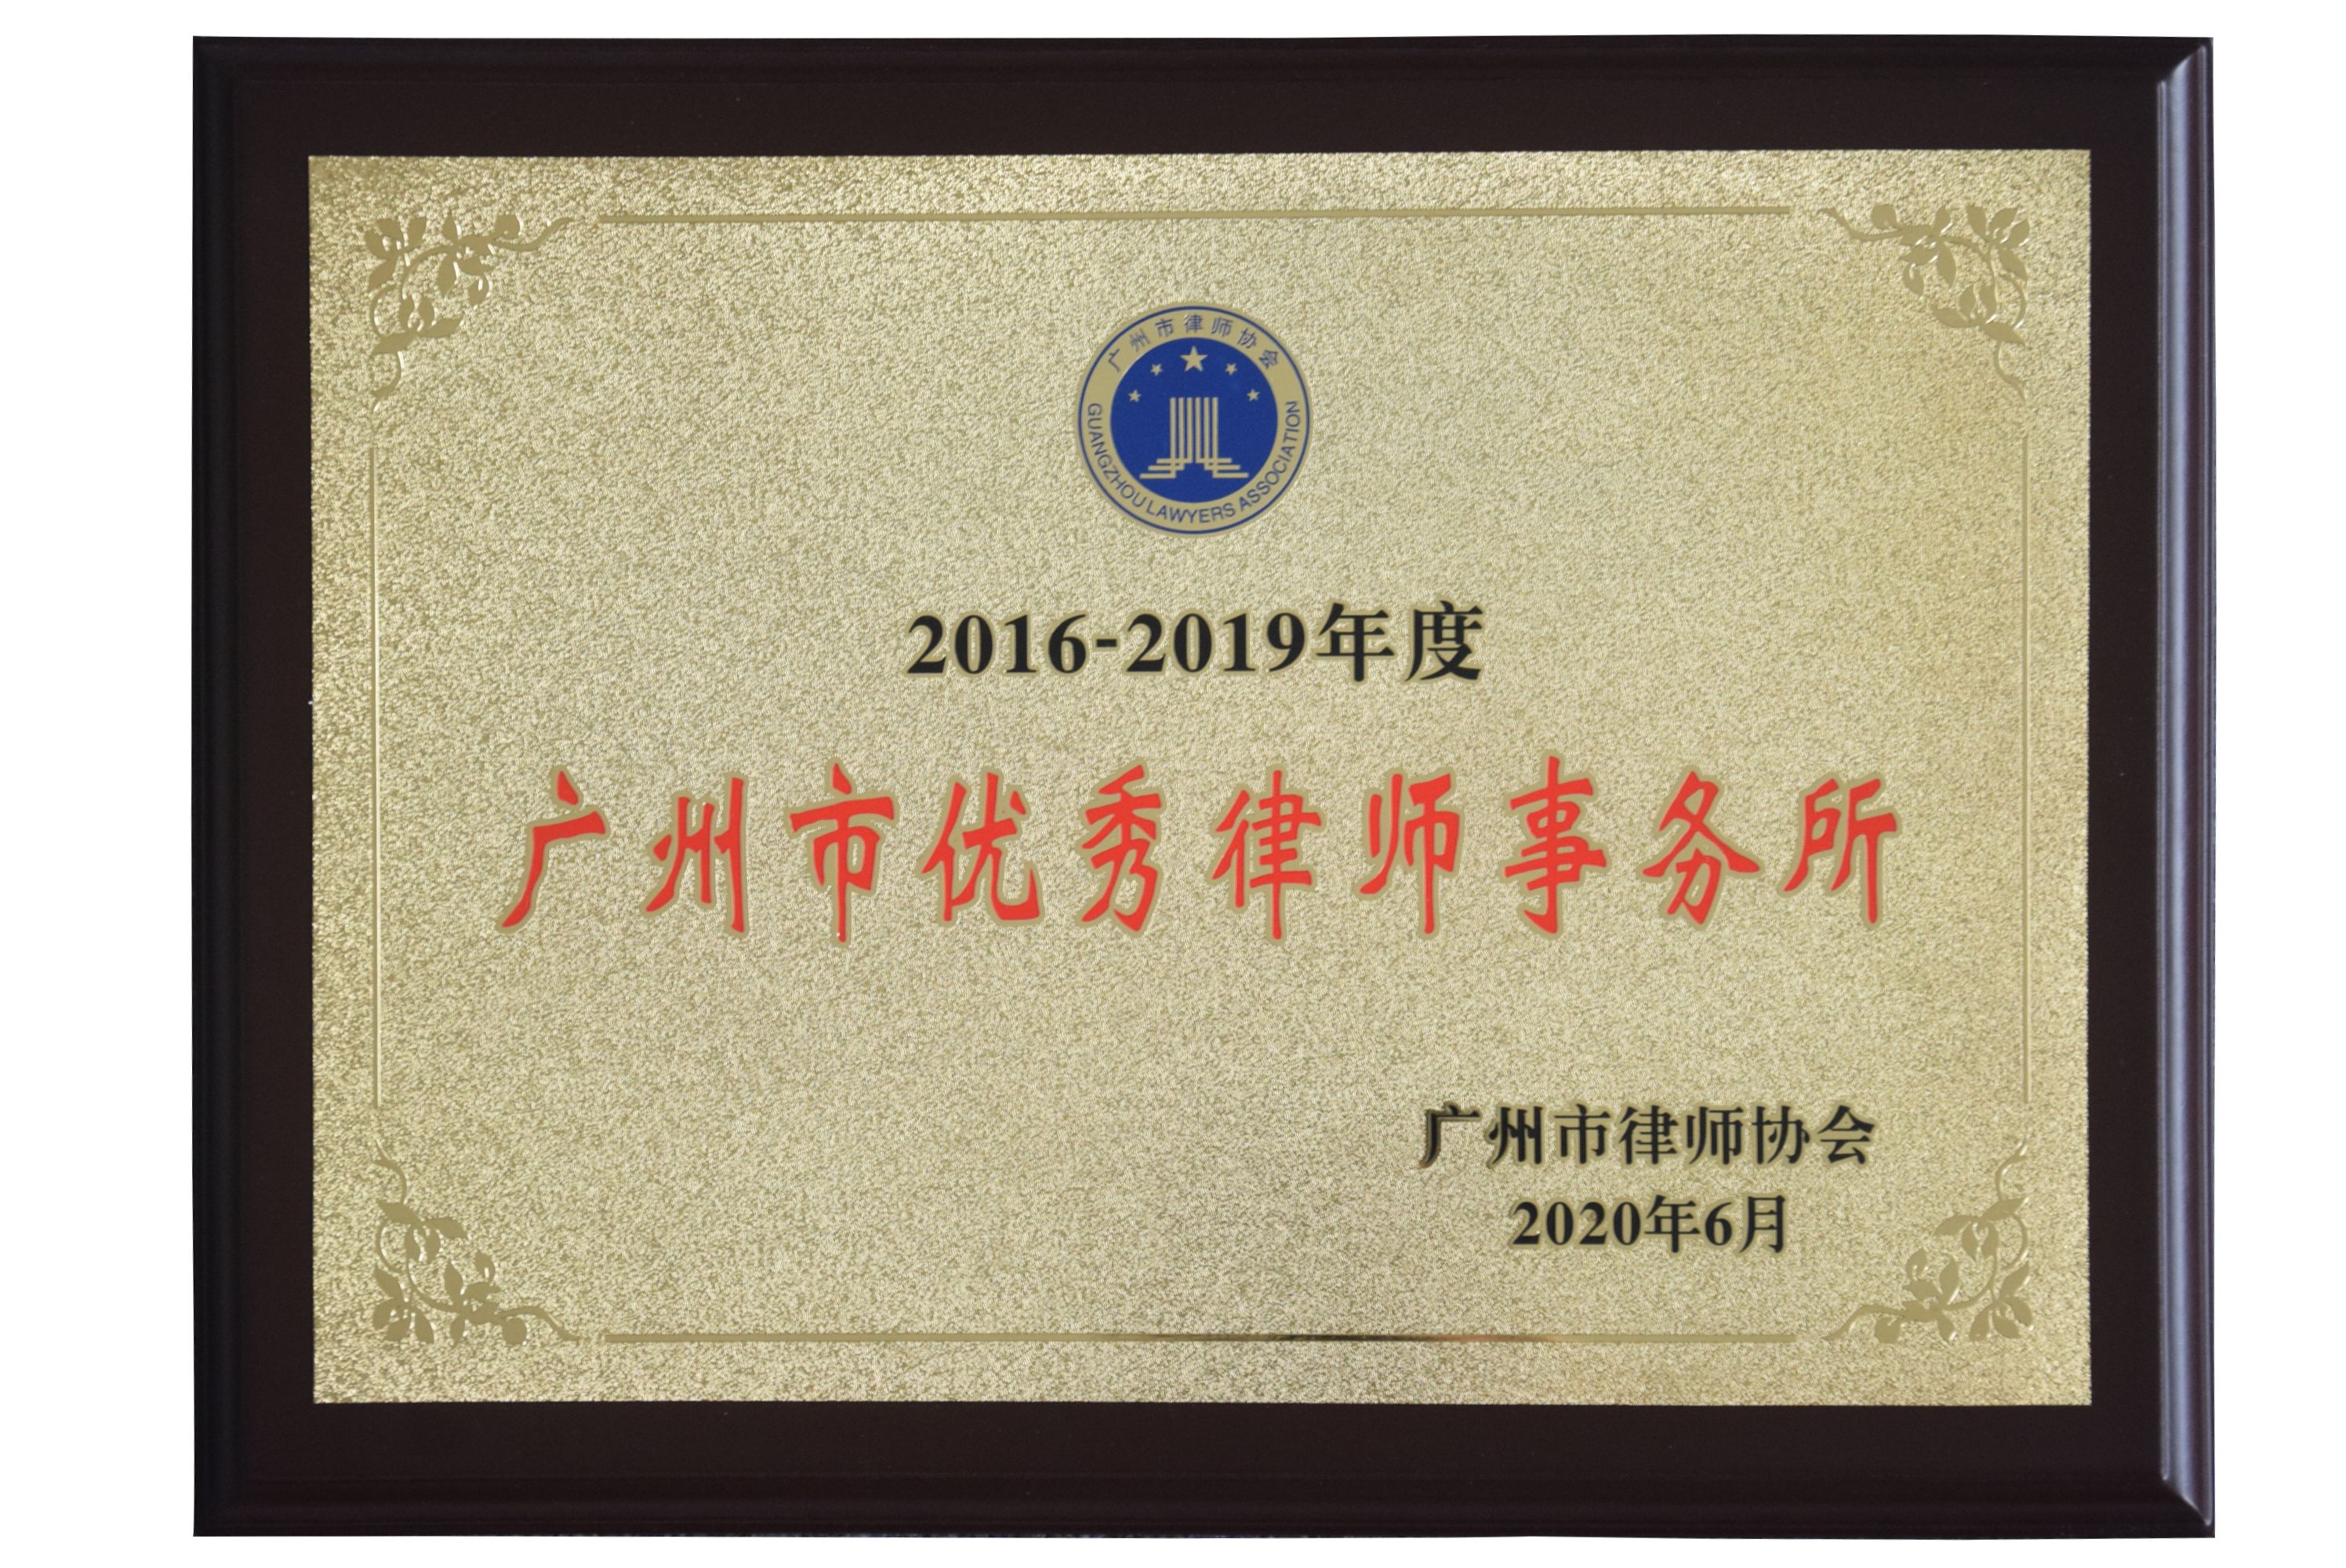 2016-2019年度广州市优秀律师事务所